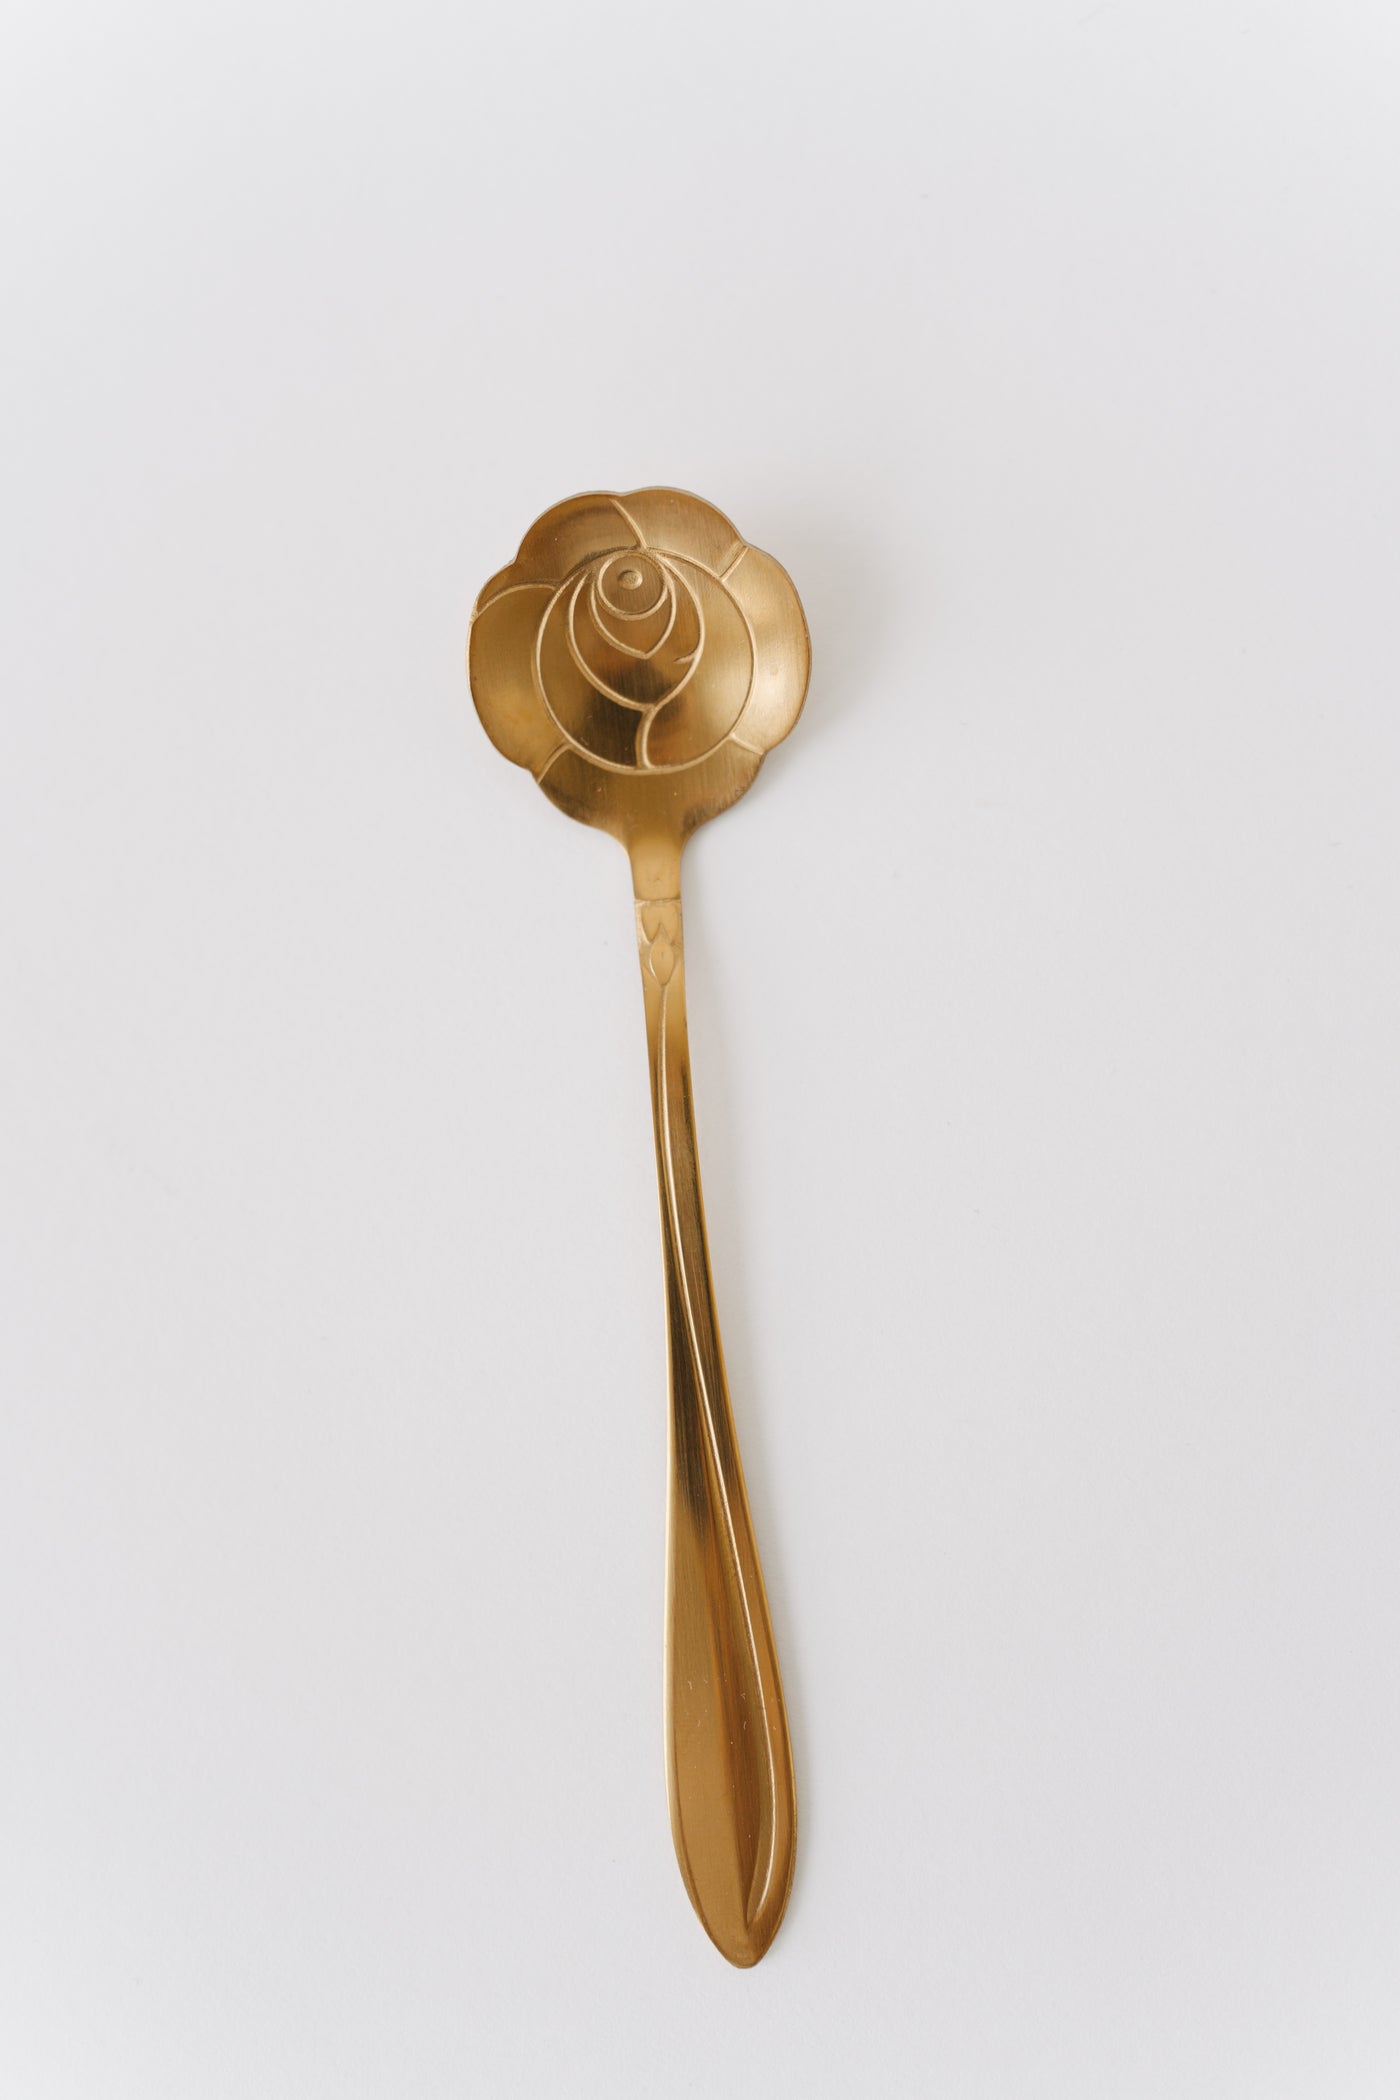 Gold Flower Spoon